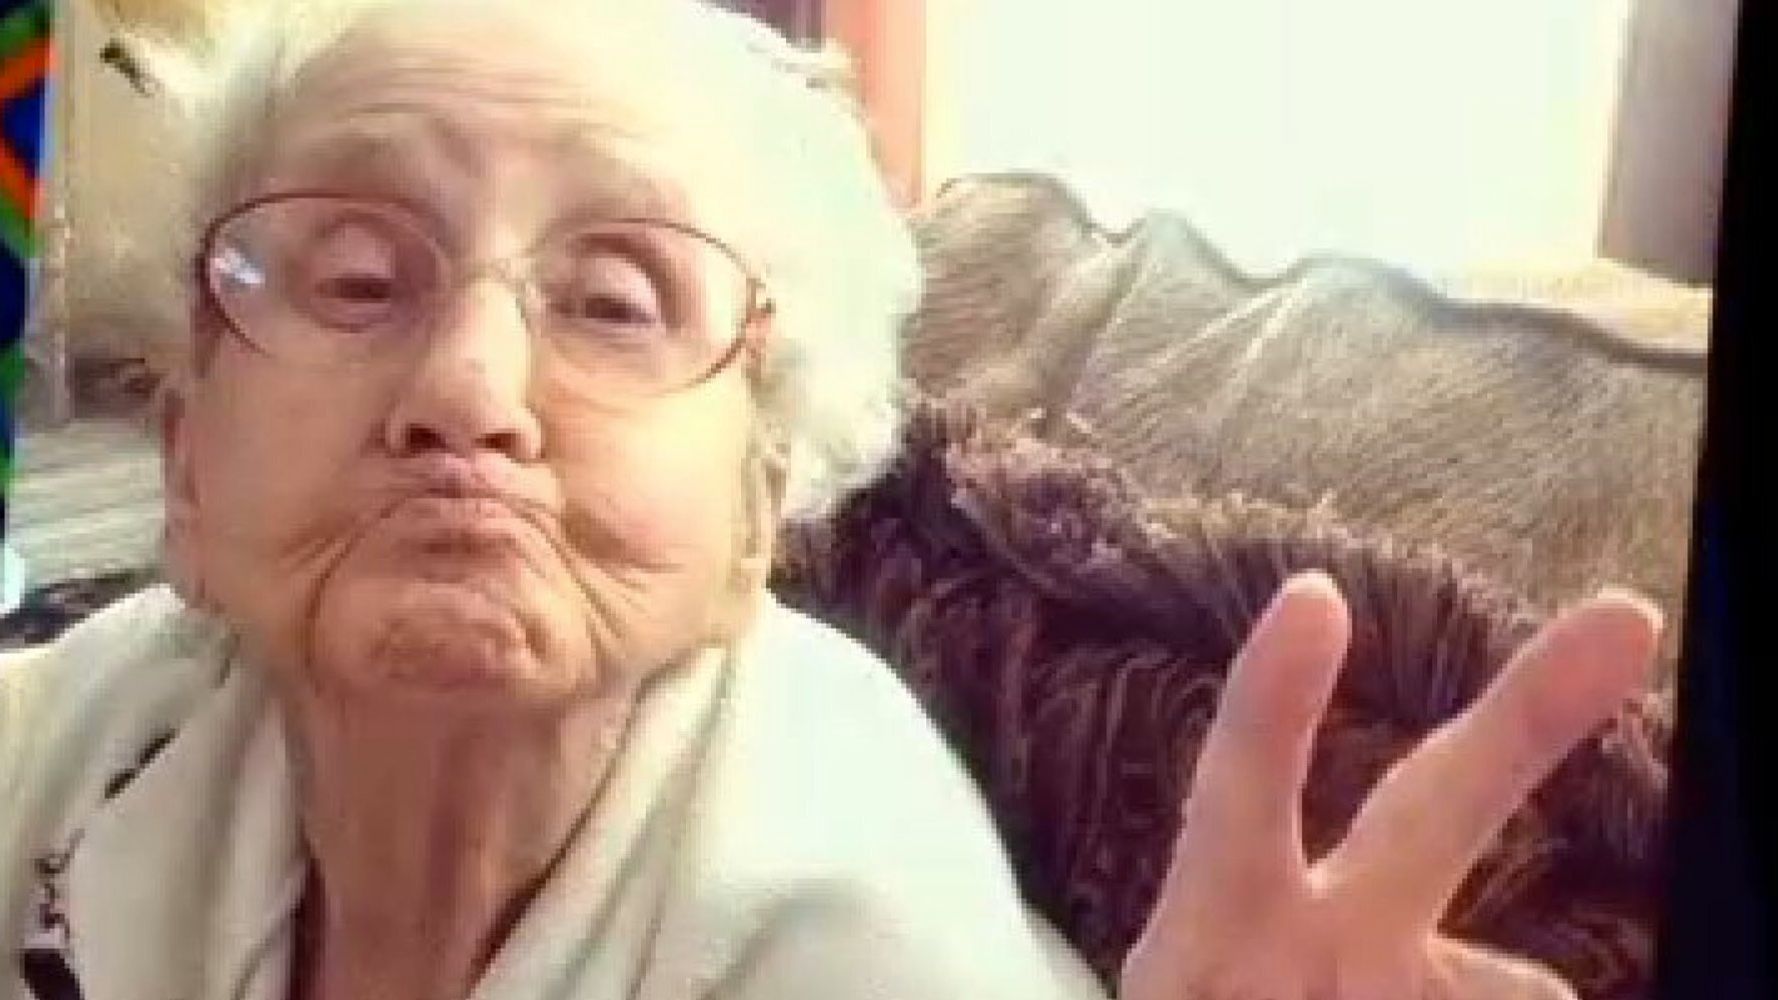 Grandma Betty S Bittersweet Instagram Reveals Heartbreaking Reality Of A Cancer Battle